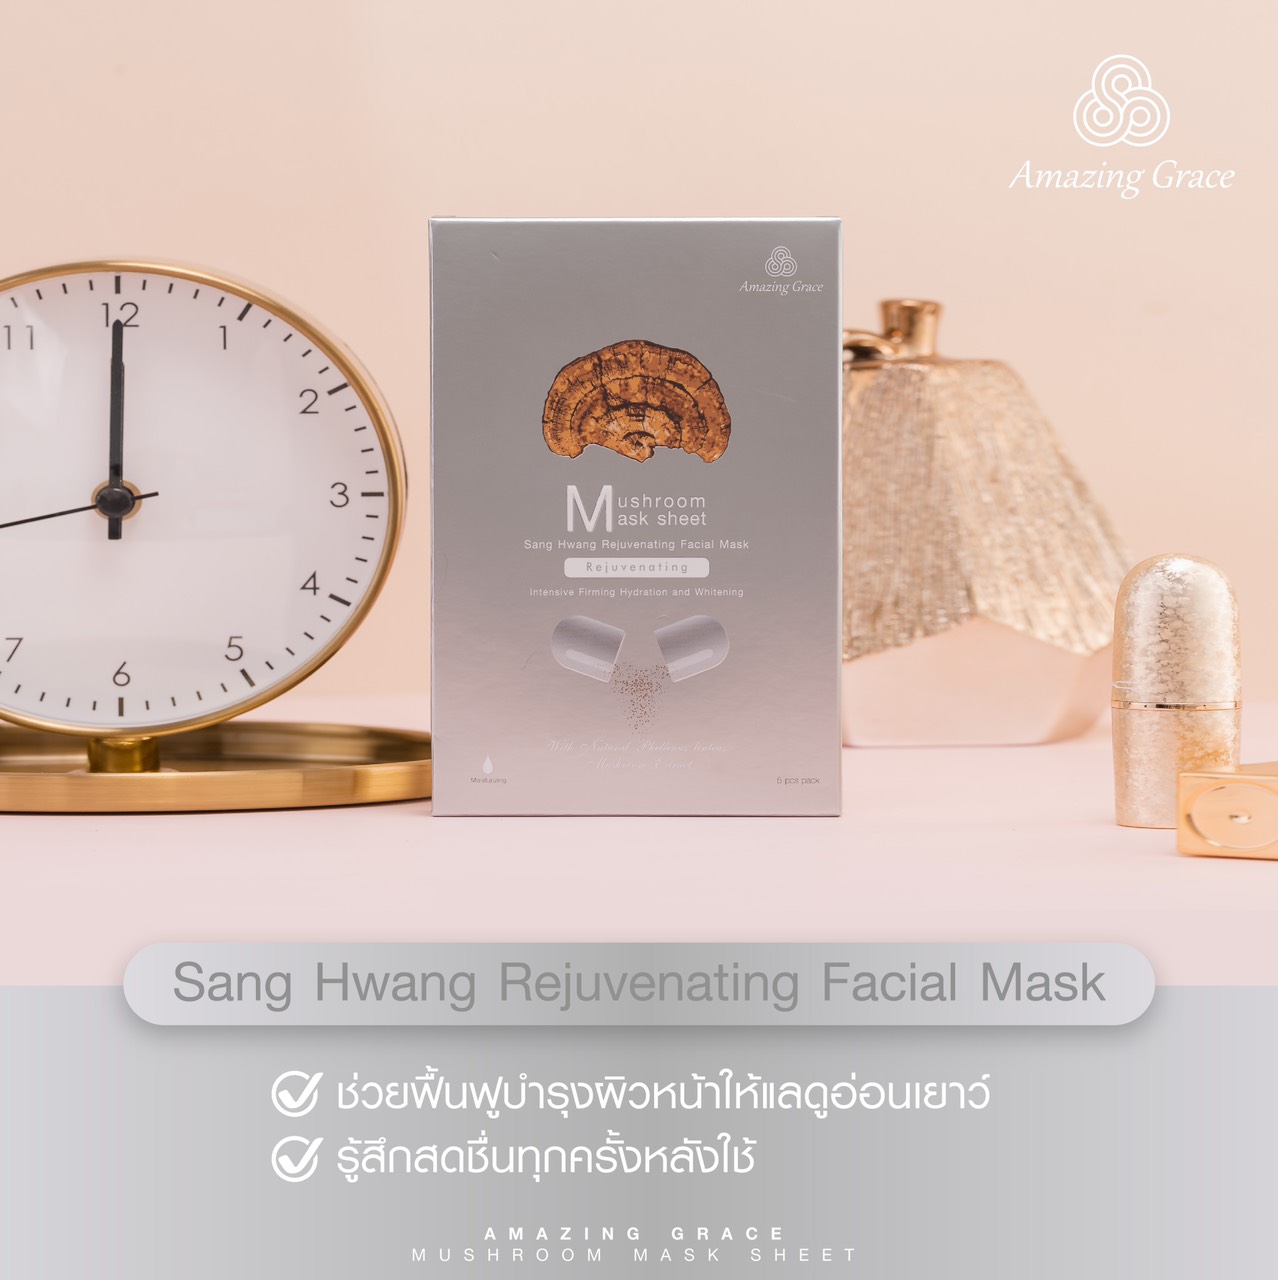 Sang Hwang Rejuvenating Facial Mask